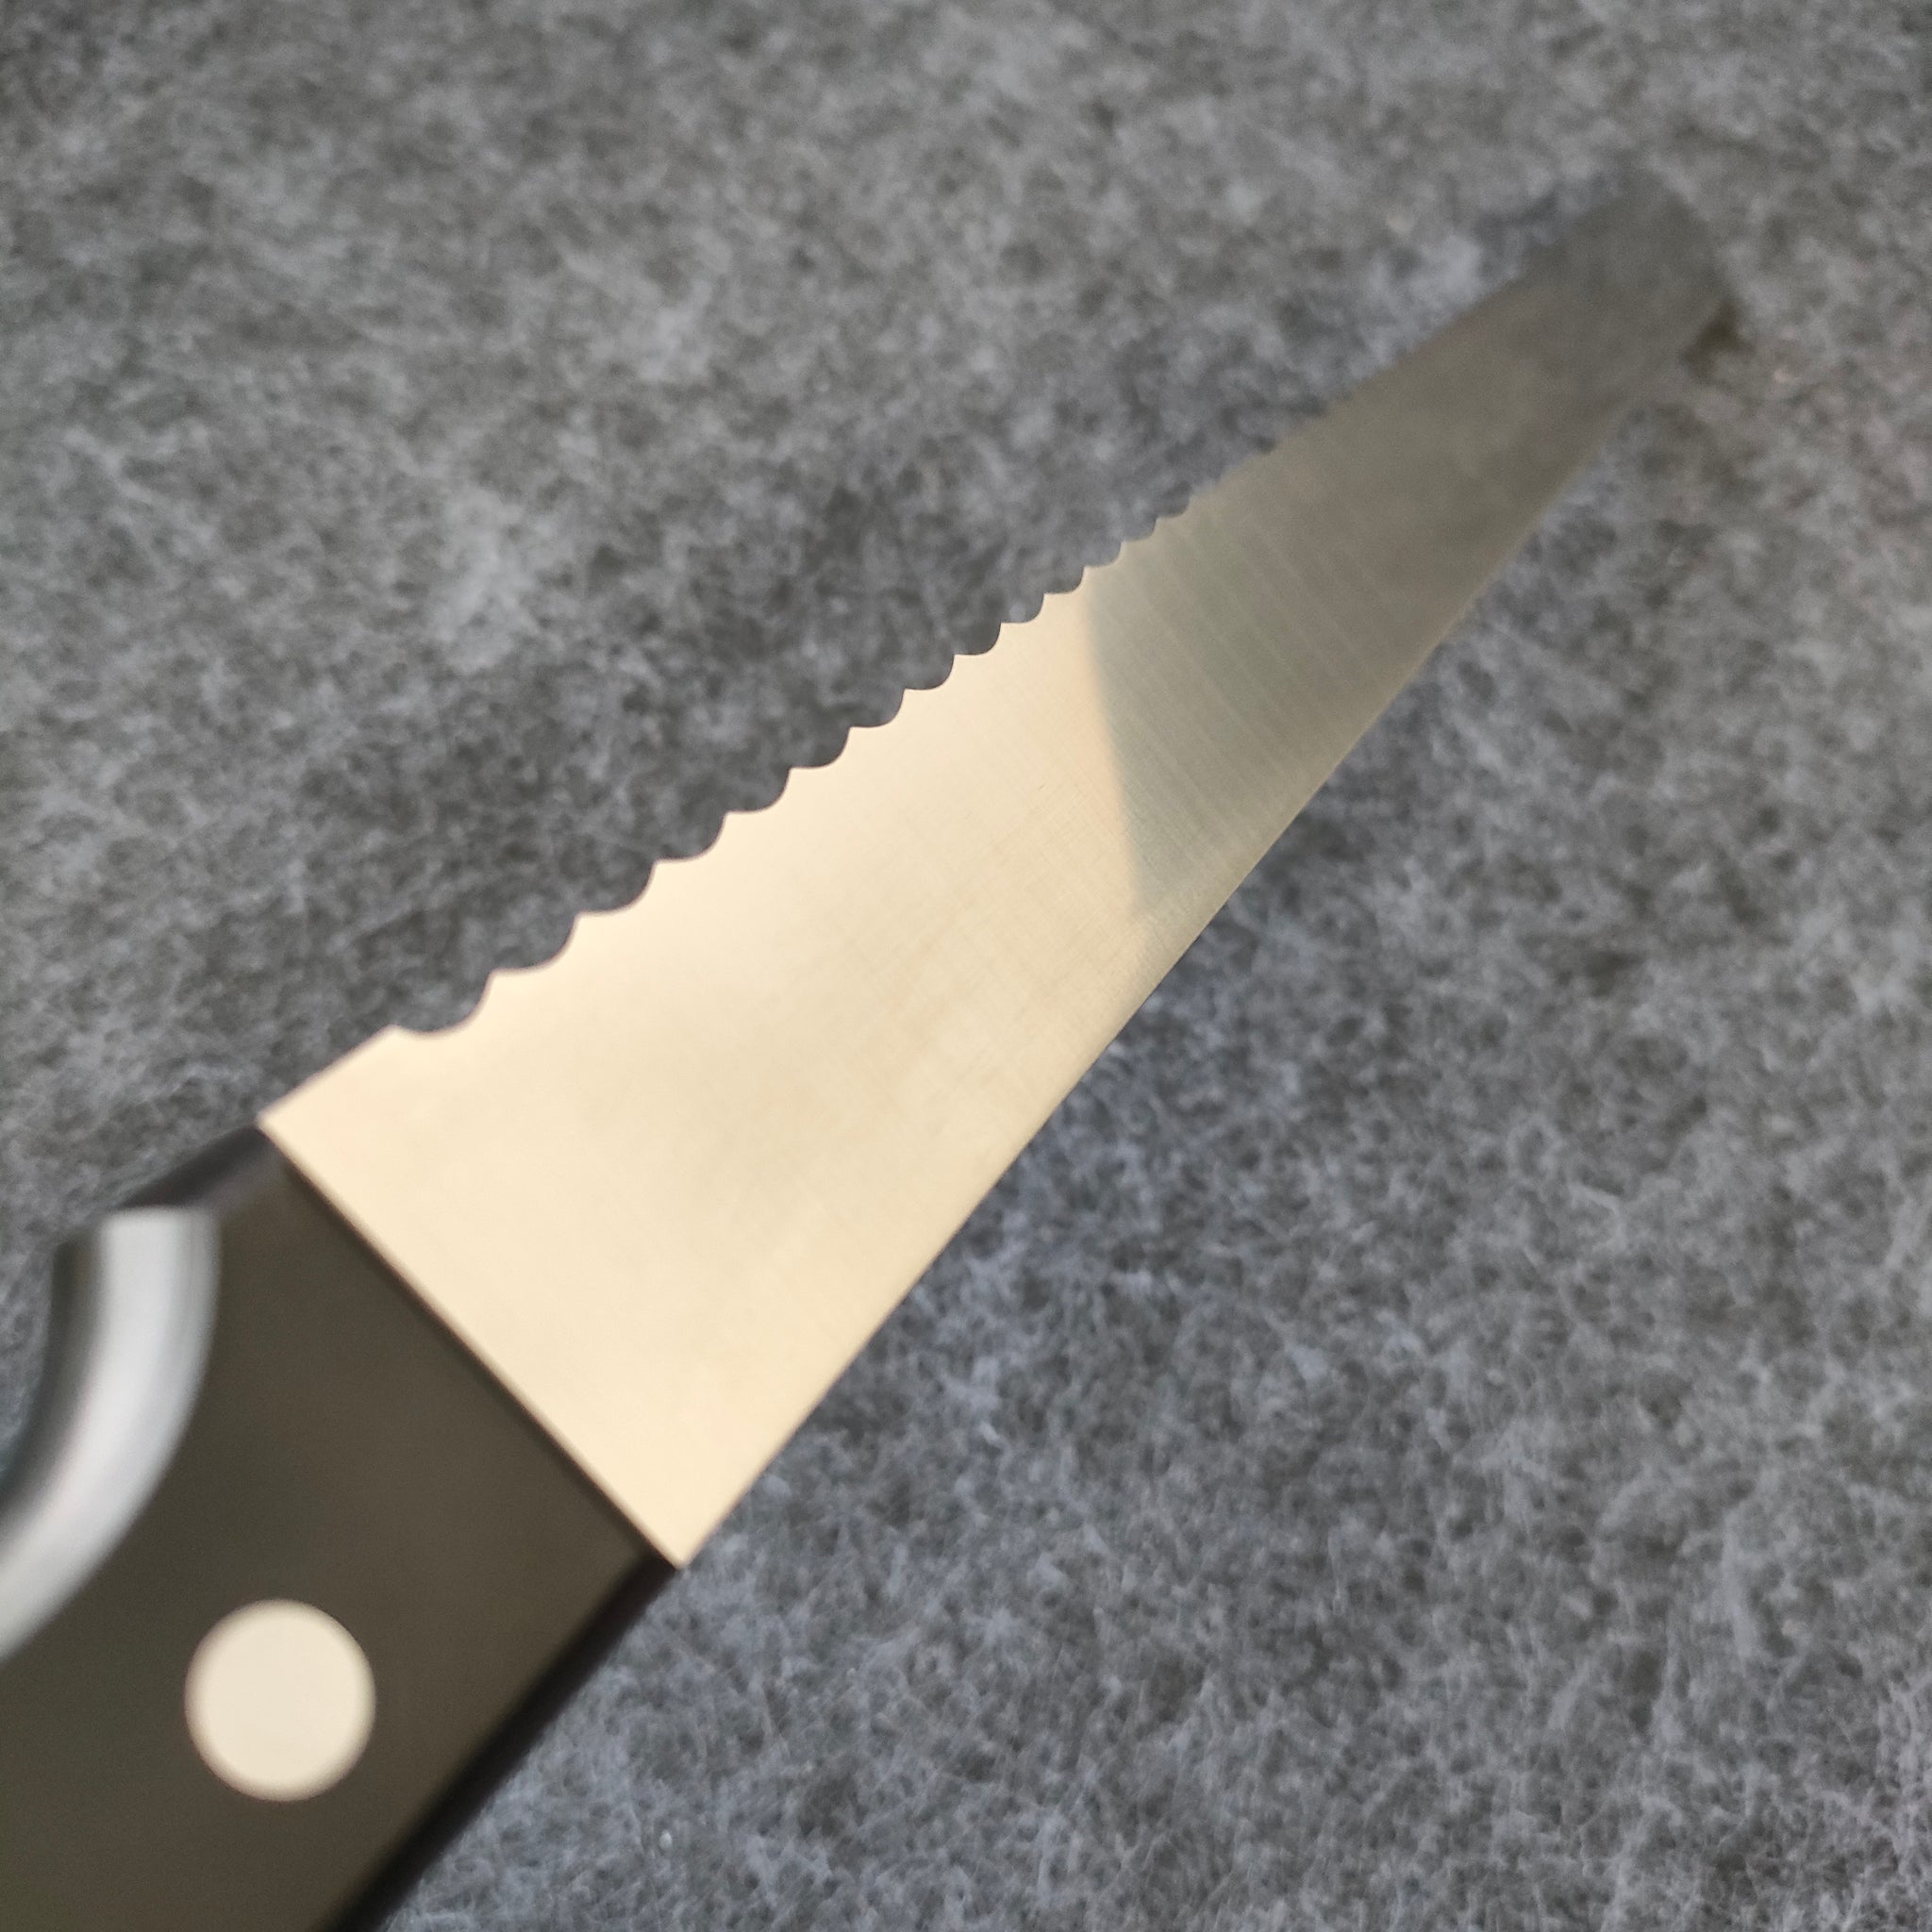 Bread Knife 300mm